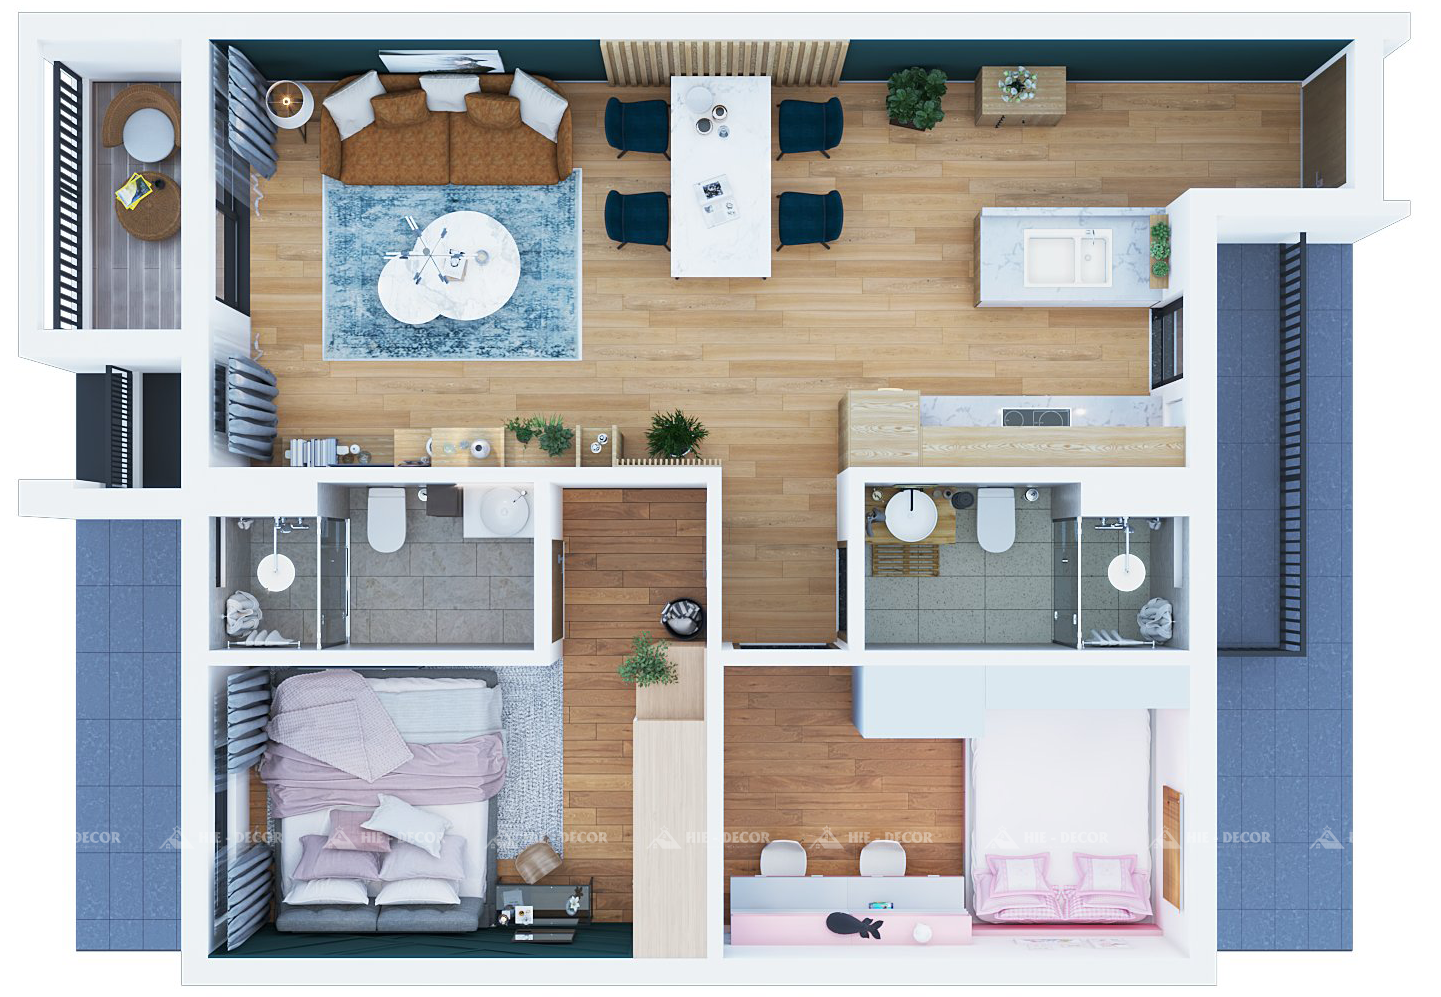 Nguyên tắc thiết kế nội thất tích cực sẽ làm tăng tính thẩm mỹ và giá trị của ngôi nhà của bạn. Với sự kết hợp của đường nét tinh tế và sáng tạo, không gian sống của bạn sẽ trở nên độc đáo và phù hợp với gu thẩm mỹ của bạn.